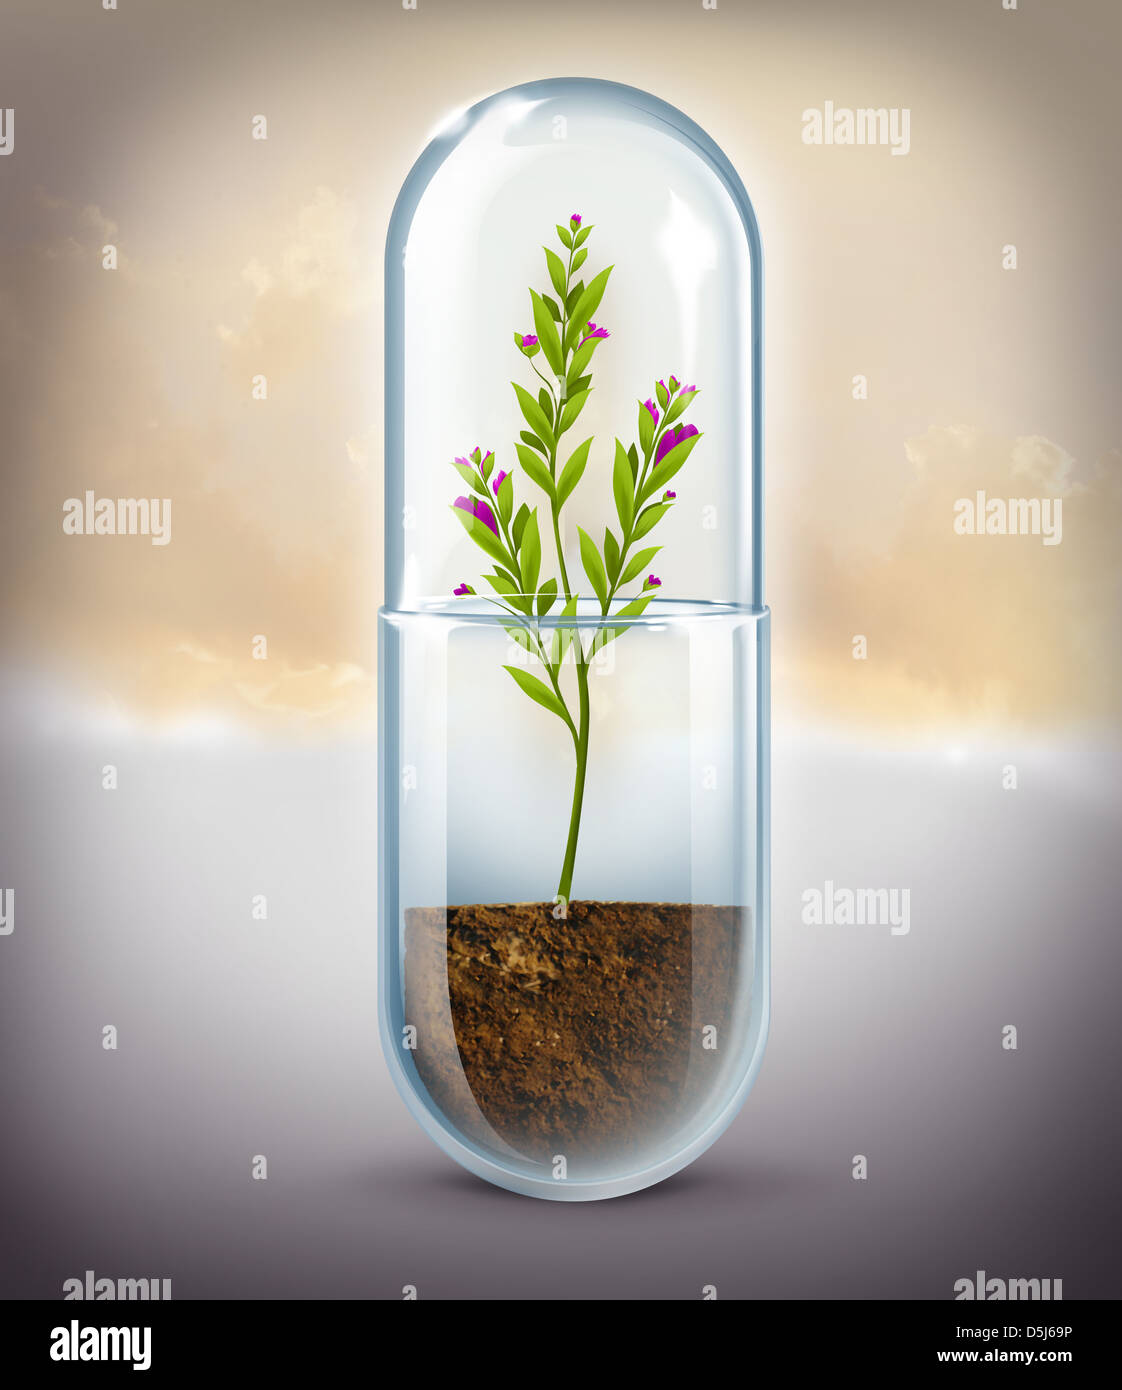 Image d'illustration de la culture d'espèces végétales sous forme de  capsules qui représente la médecine naturelle Photo Stock - Alamy